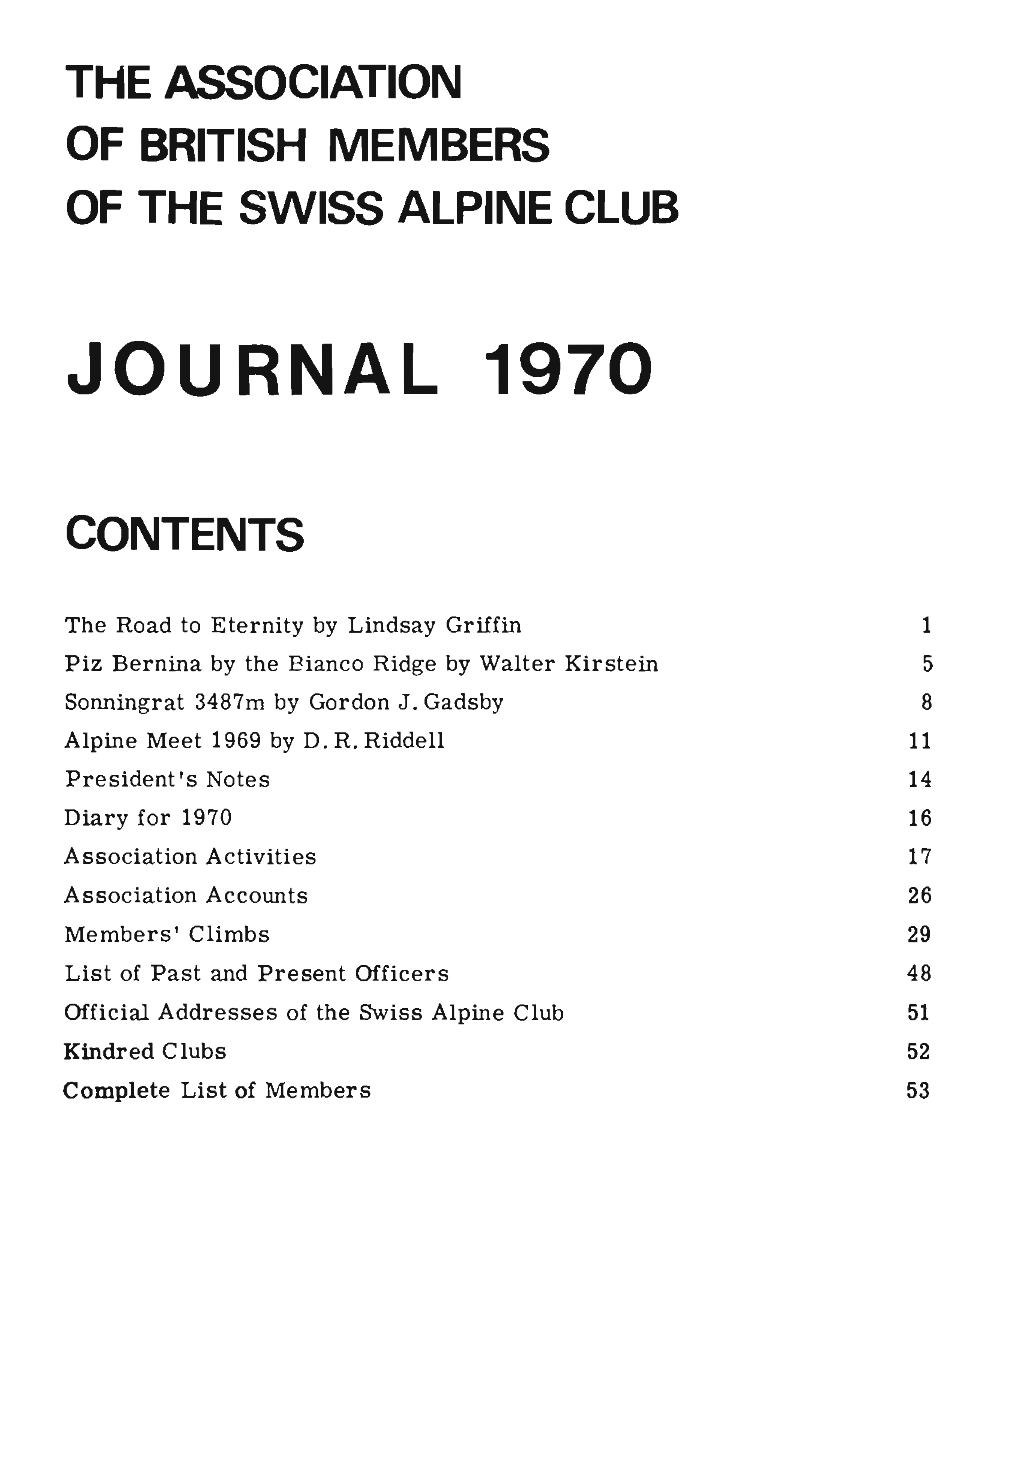 Journal 1970